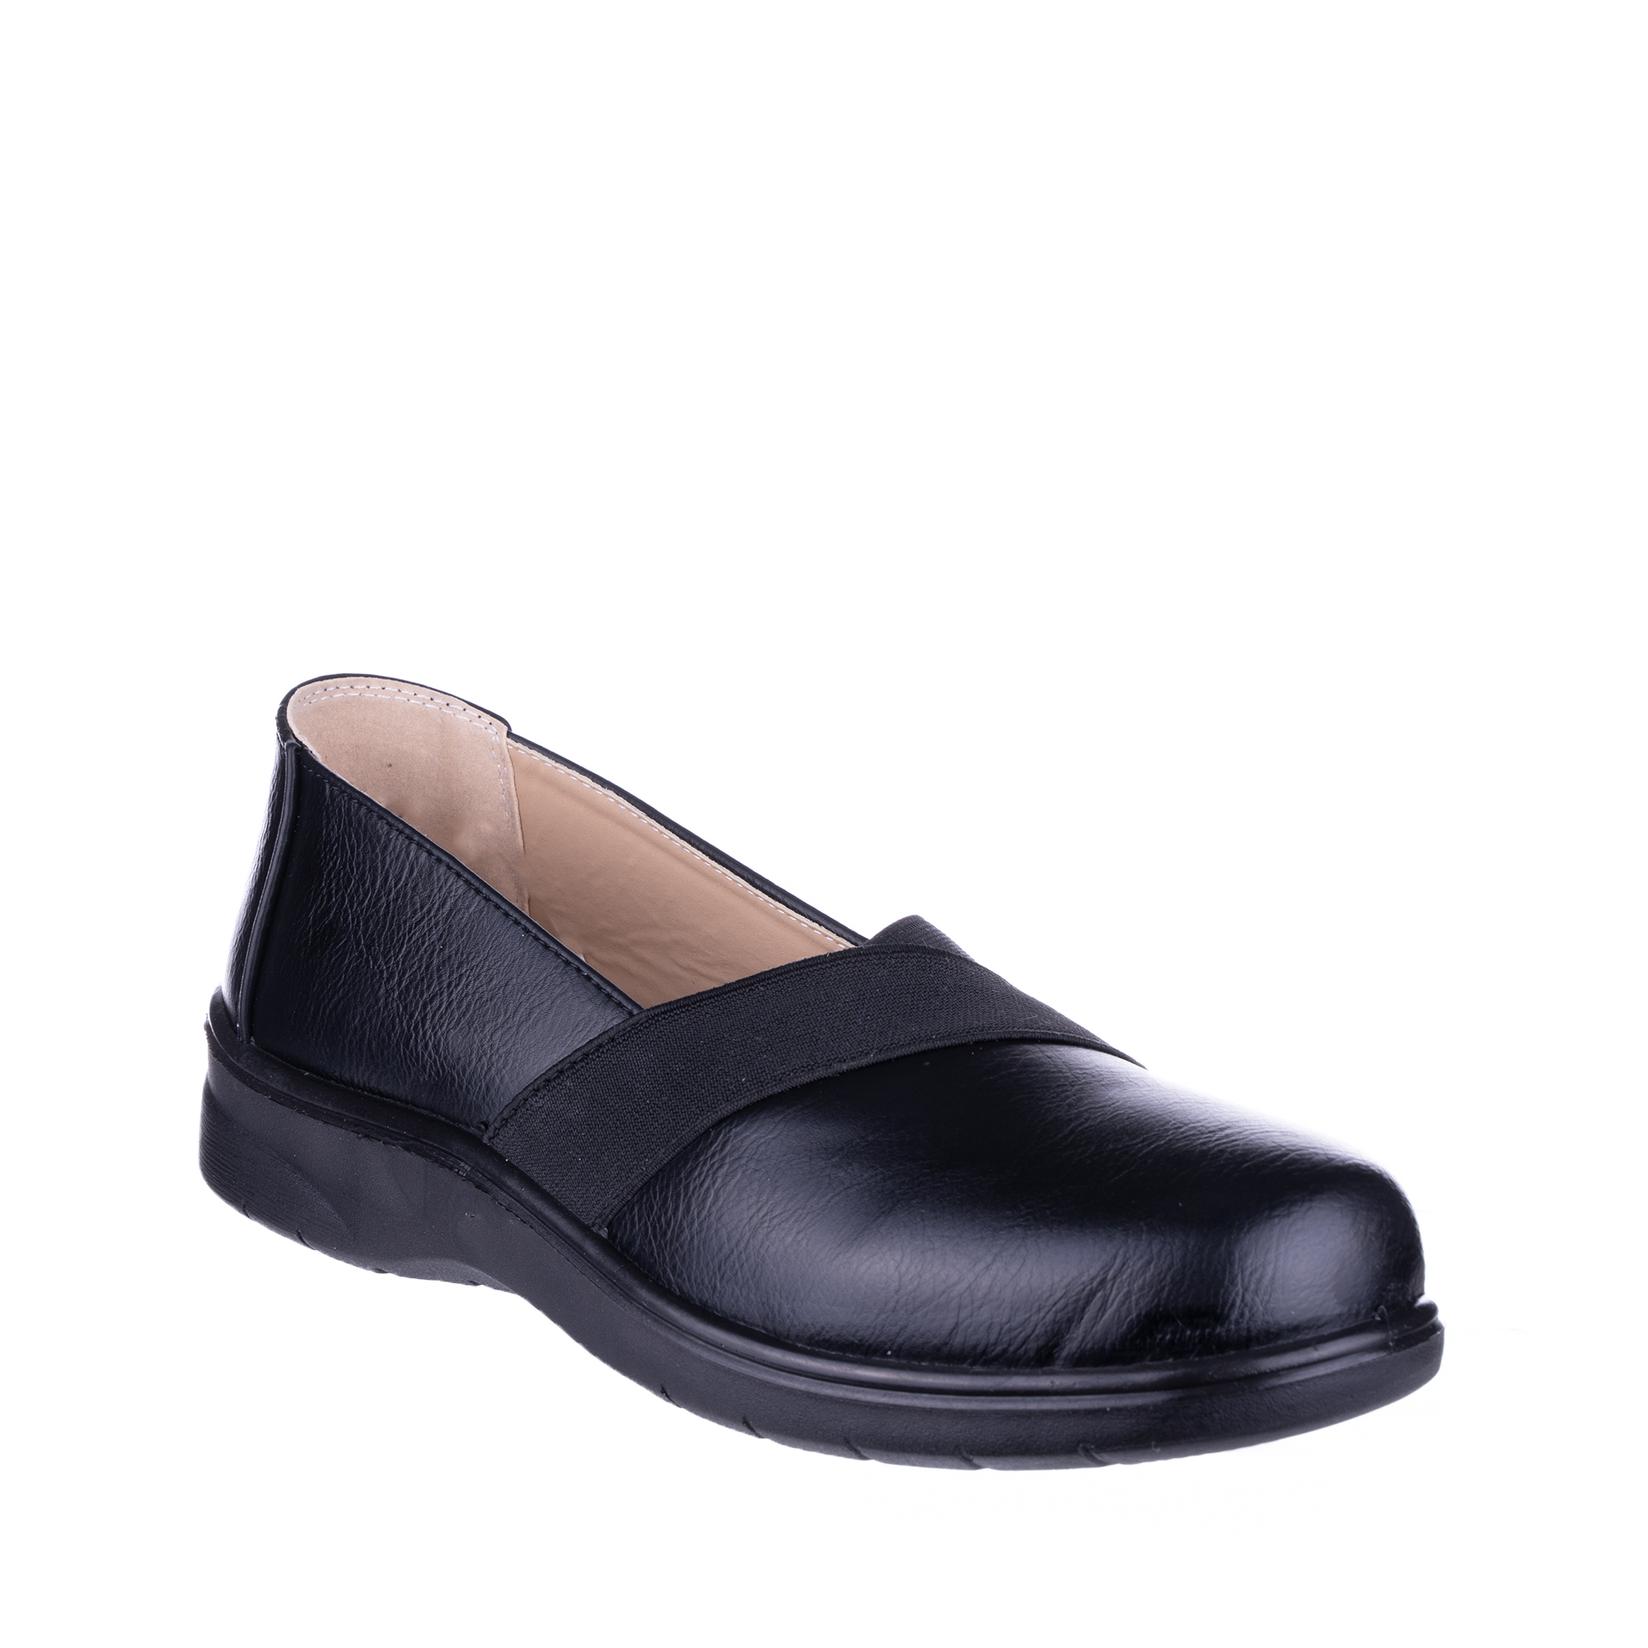 COMFORT BY ELLY SHOES Ženske cipele N74739, Crne